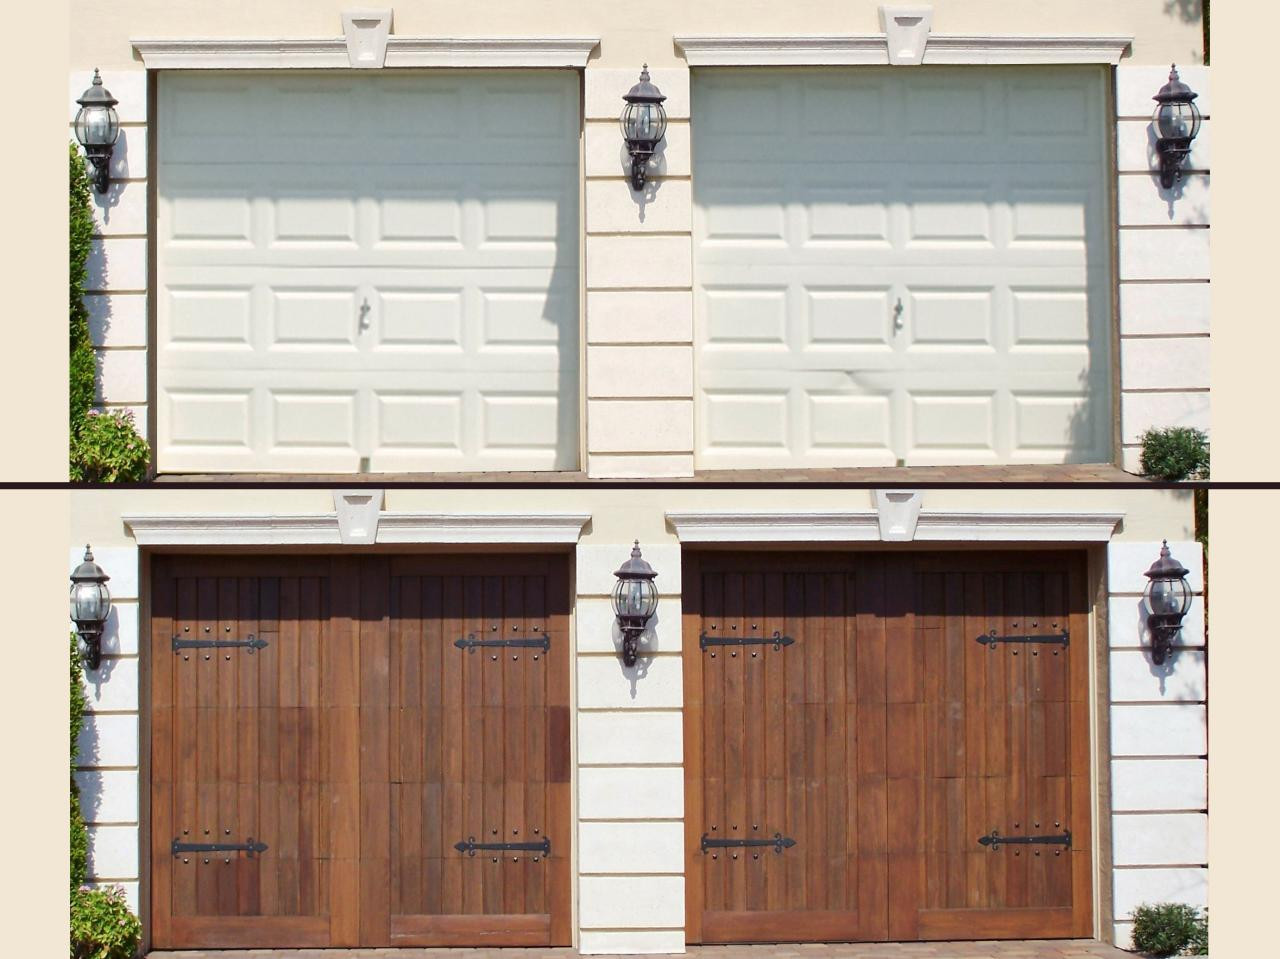 Best ideas about Garage Door Repair DIY
. Save or Pin Do It Yourself Garage Door Repair Dap fice Now.